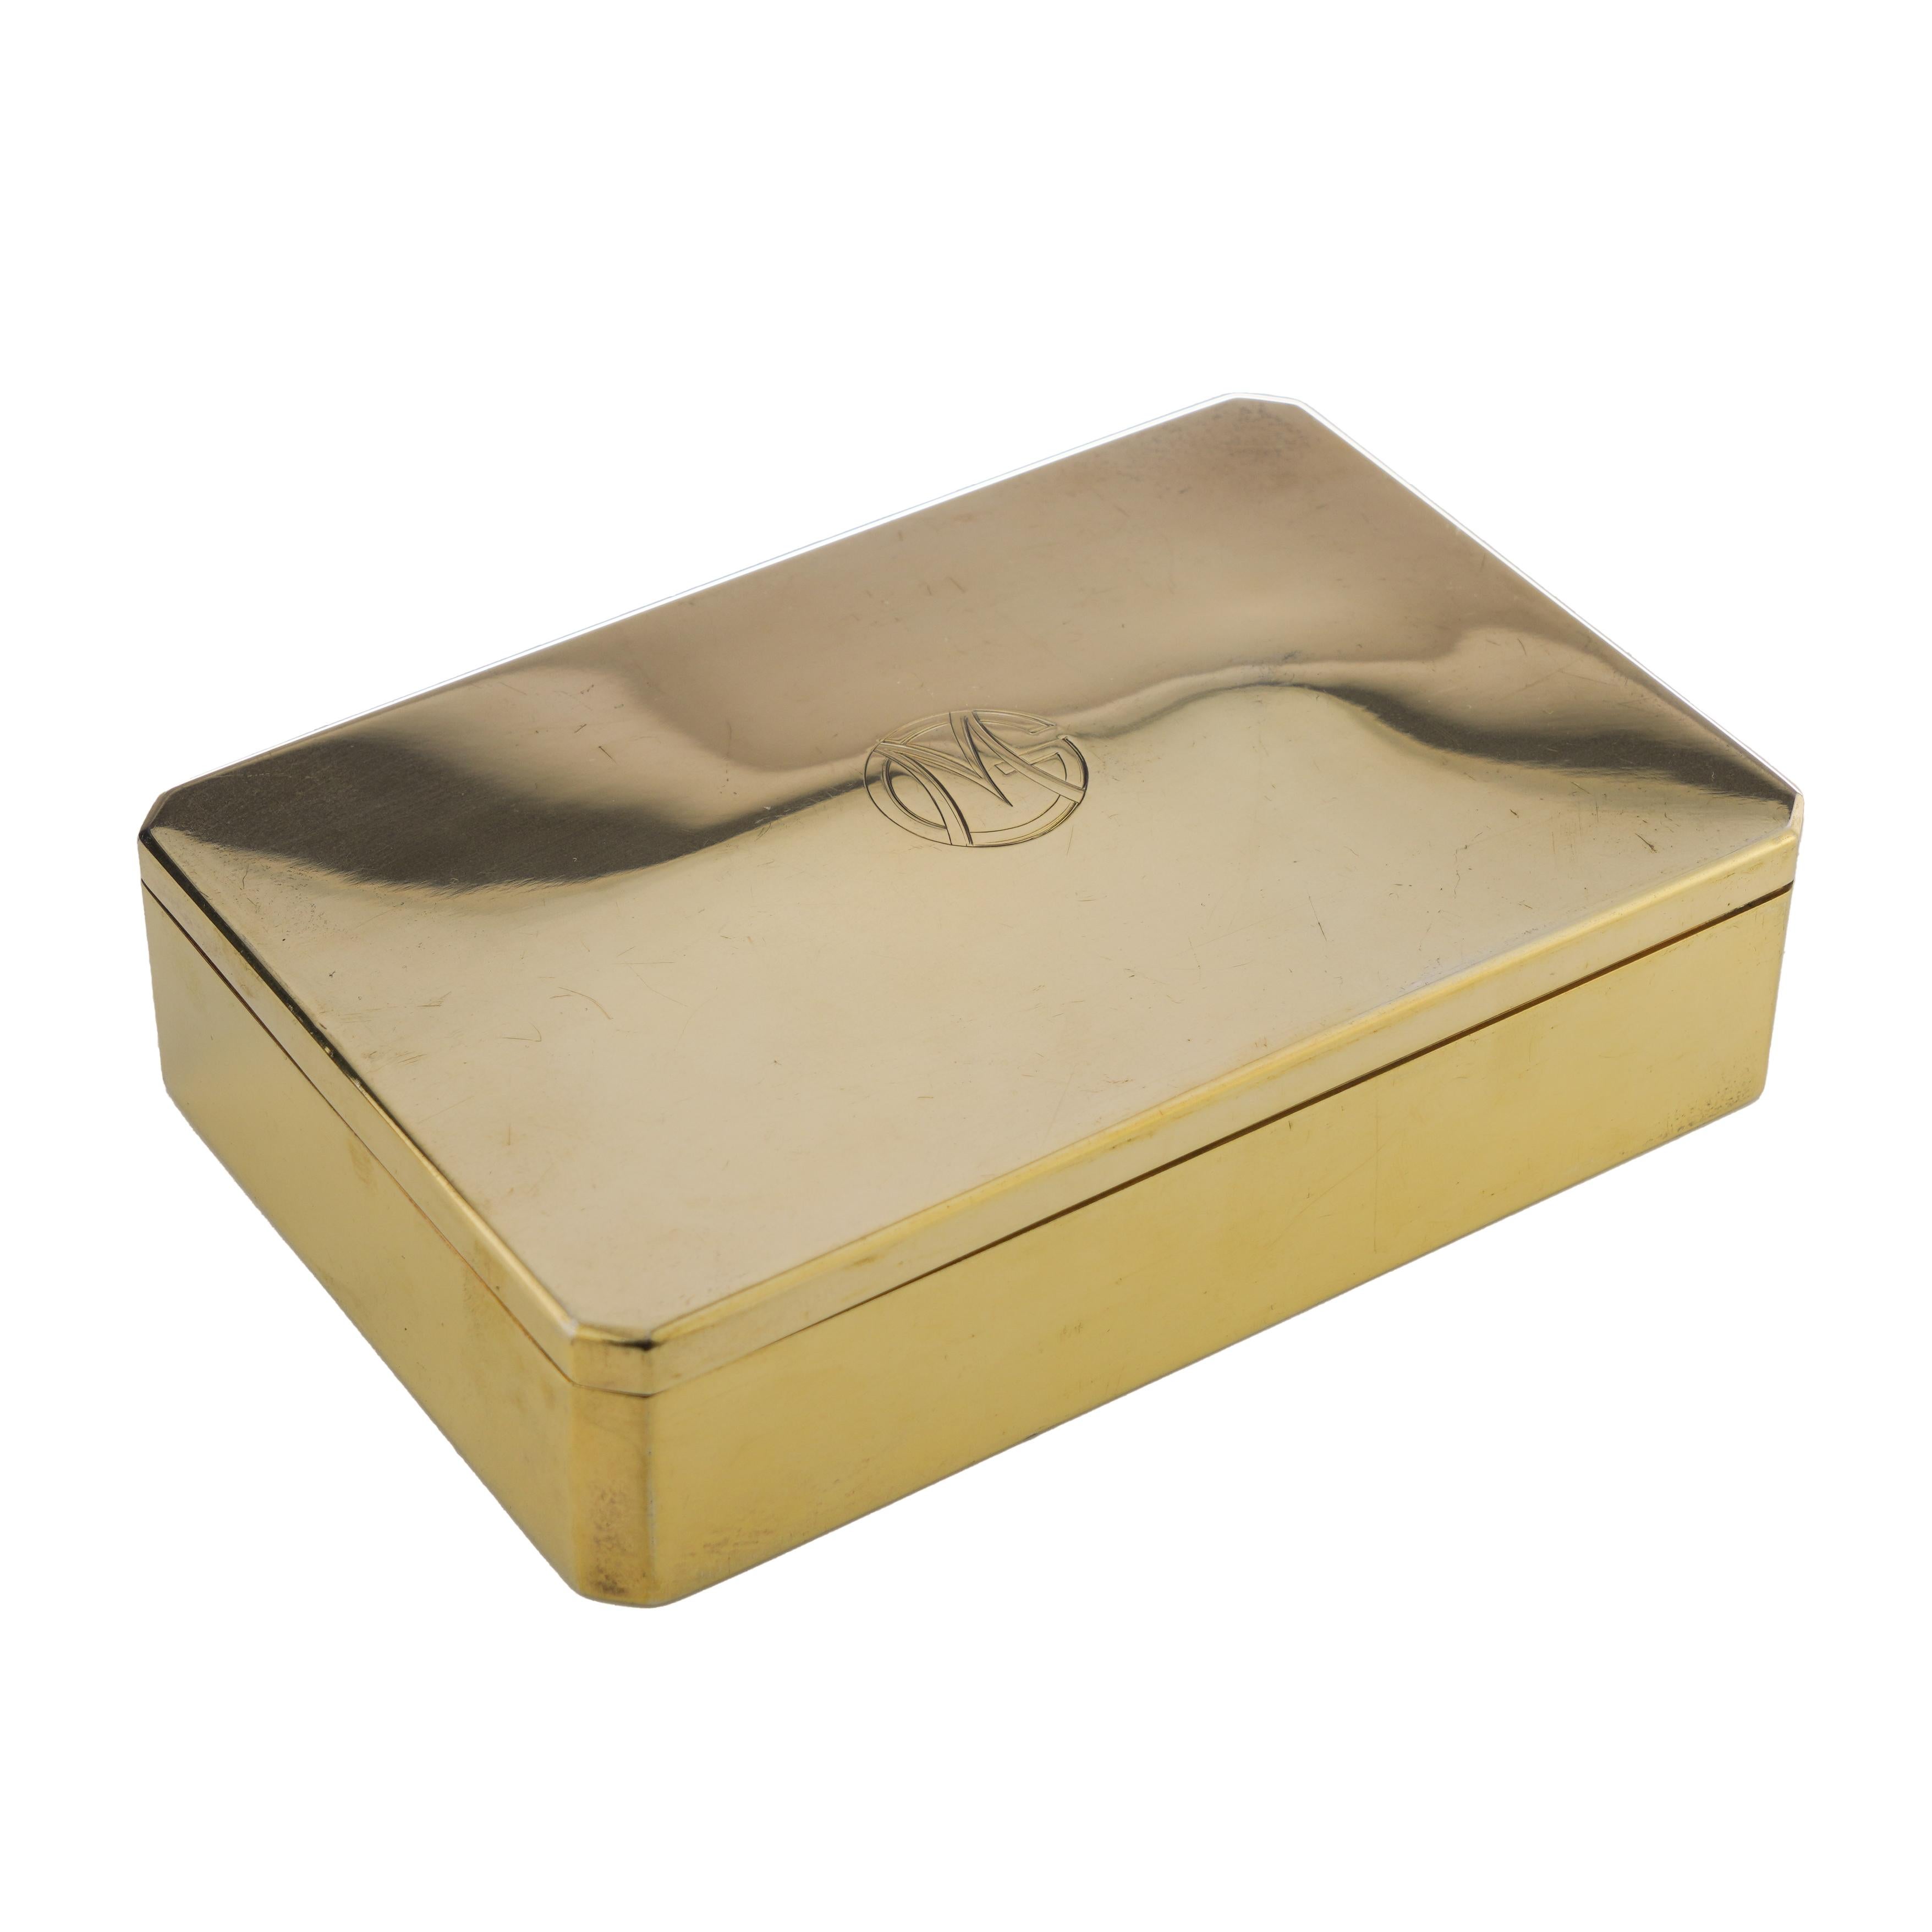 Gustave Keller Art Deco Silber vergoldete Sandwich Box mit M & G Monogramm.
Hergestellt in Frankreich, Paris
Gepunzt mit französischen Marken, Feingehalt 950/1000 Silber. 

 Ungefähre Abmessungen - 
 Maße: Länge x Breite x Höhe: 15 x 10 x 3,5